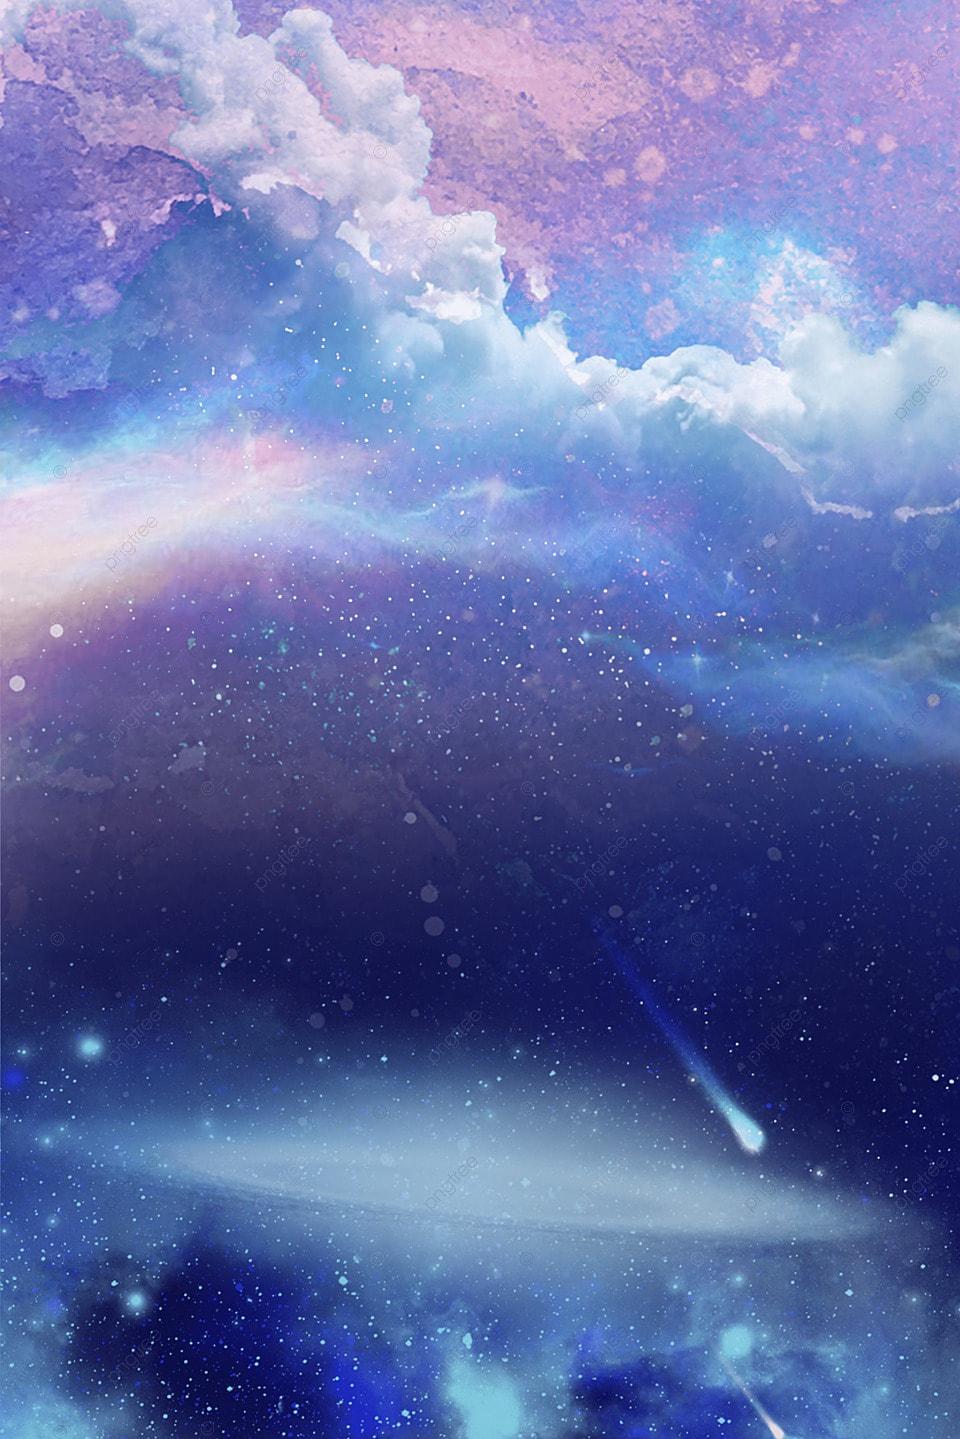 Аниме звездное небо облака синий красивый фон Обои Изображение для  бесплатной загрузки - Pngtree